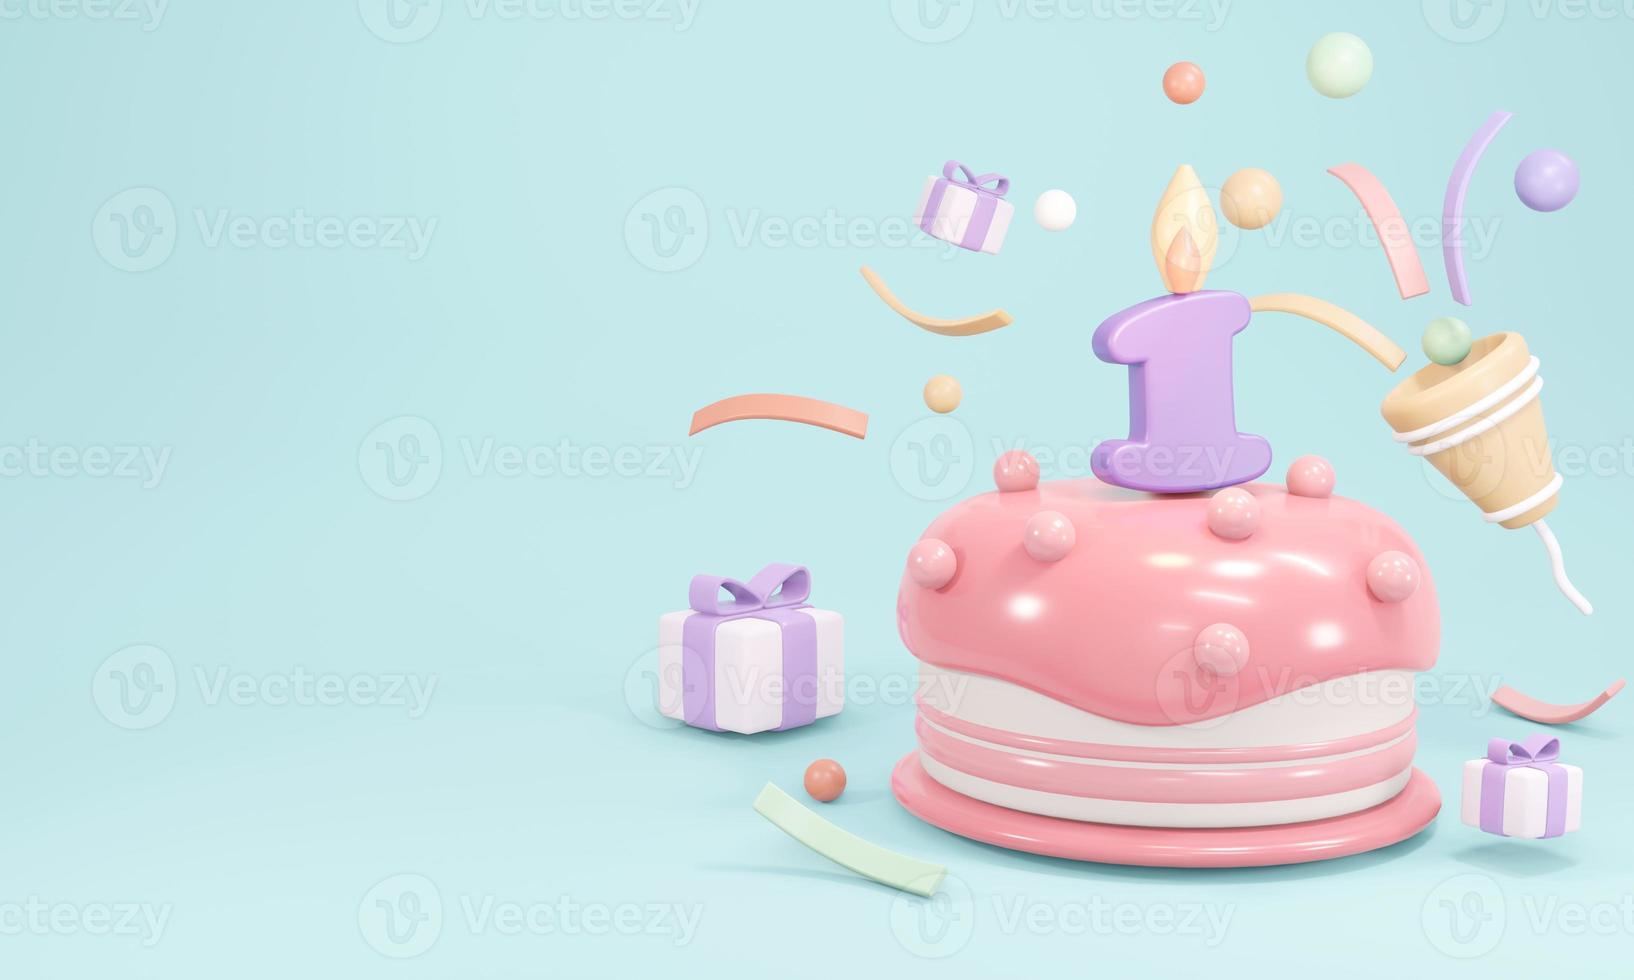 Representación 3d de la fiesta de pastel de cumpleaños pastel con vela número 1 con espacio de copia sobre fondo azul. Ilustración de procesamiento 3d. foto